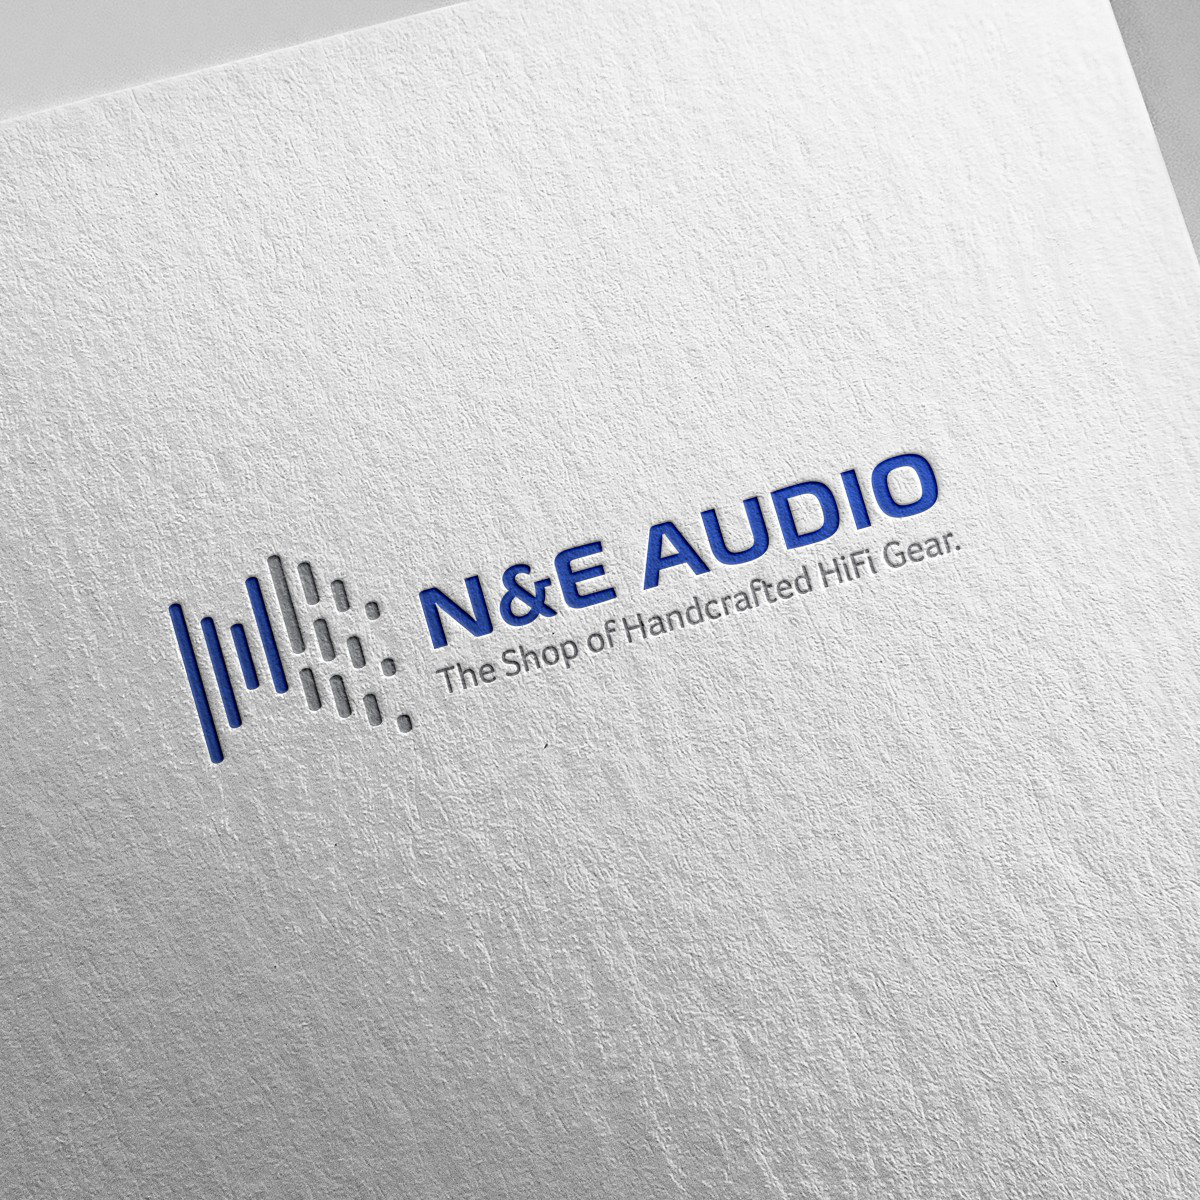 N&E Audio Logo by Wai Ching Chan